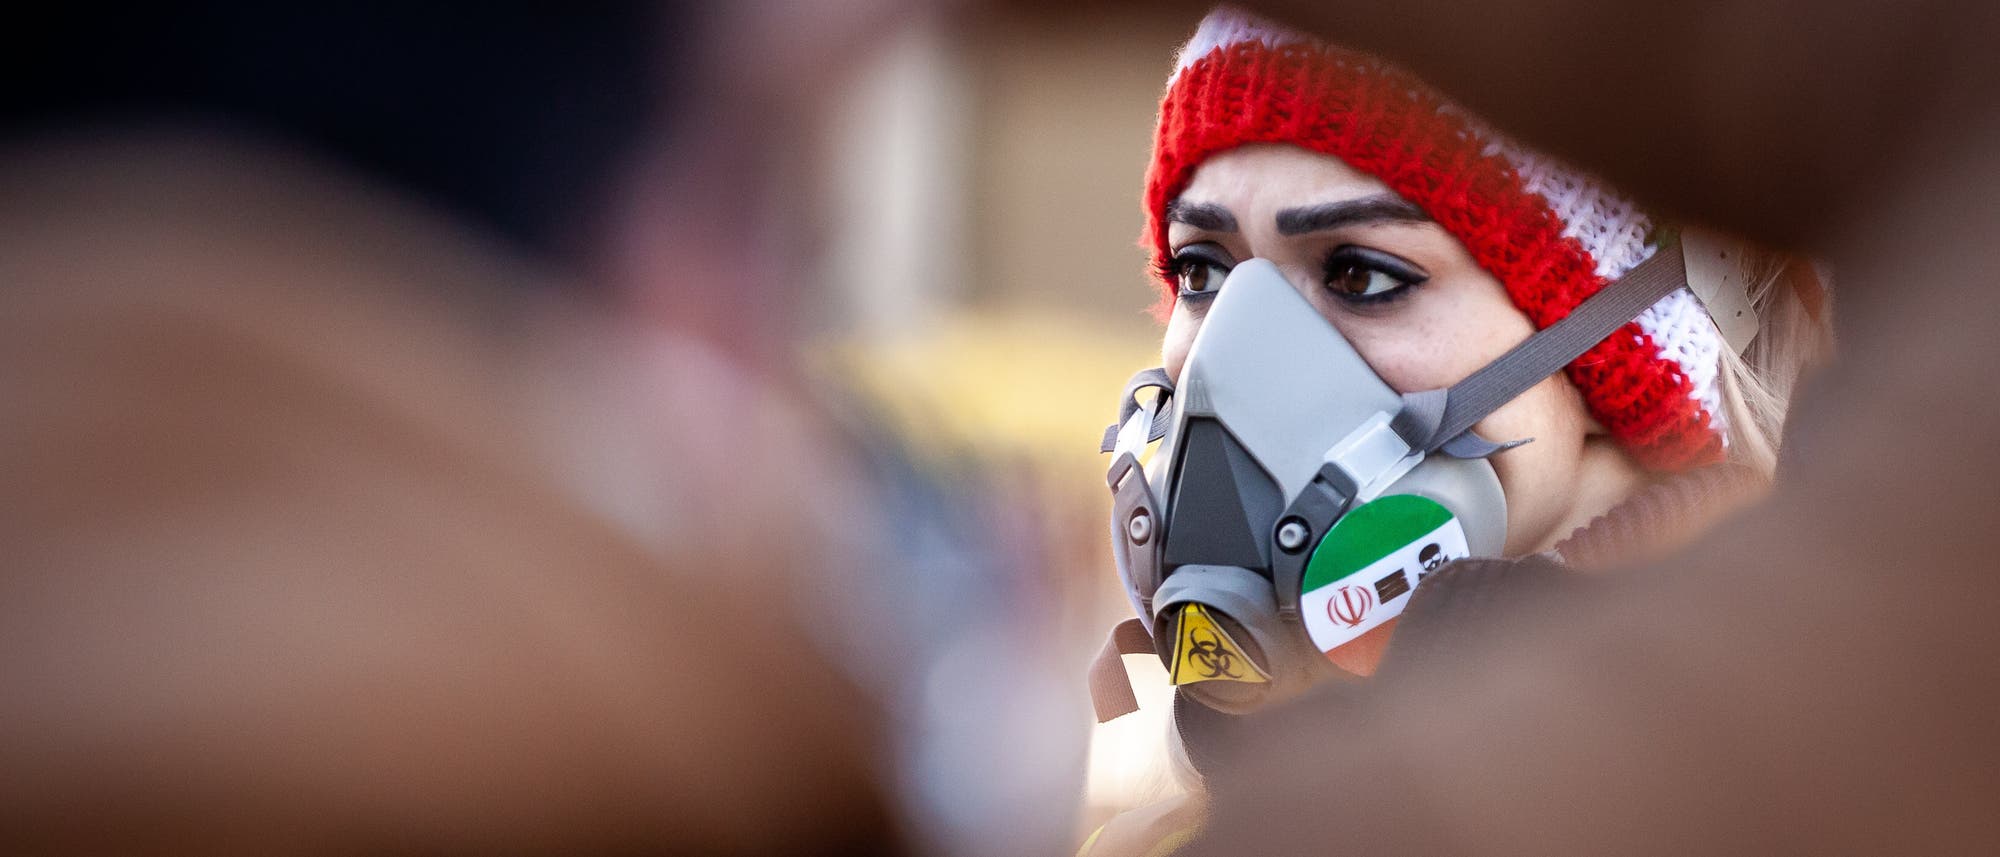 Eine Frau mit Gasmaske bei einer Demonstration gegen das Regime im Iran.